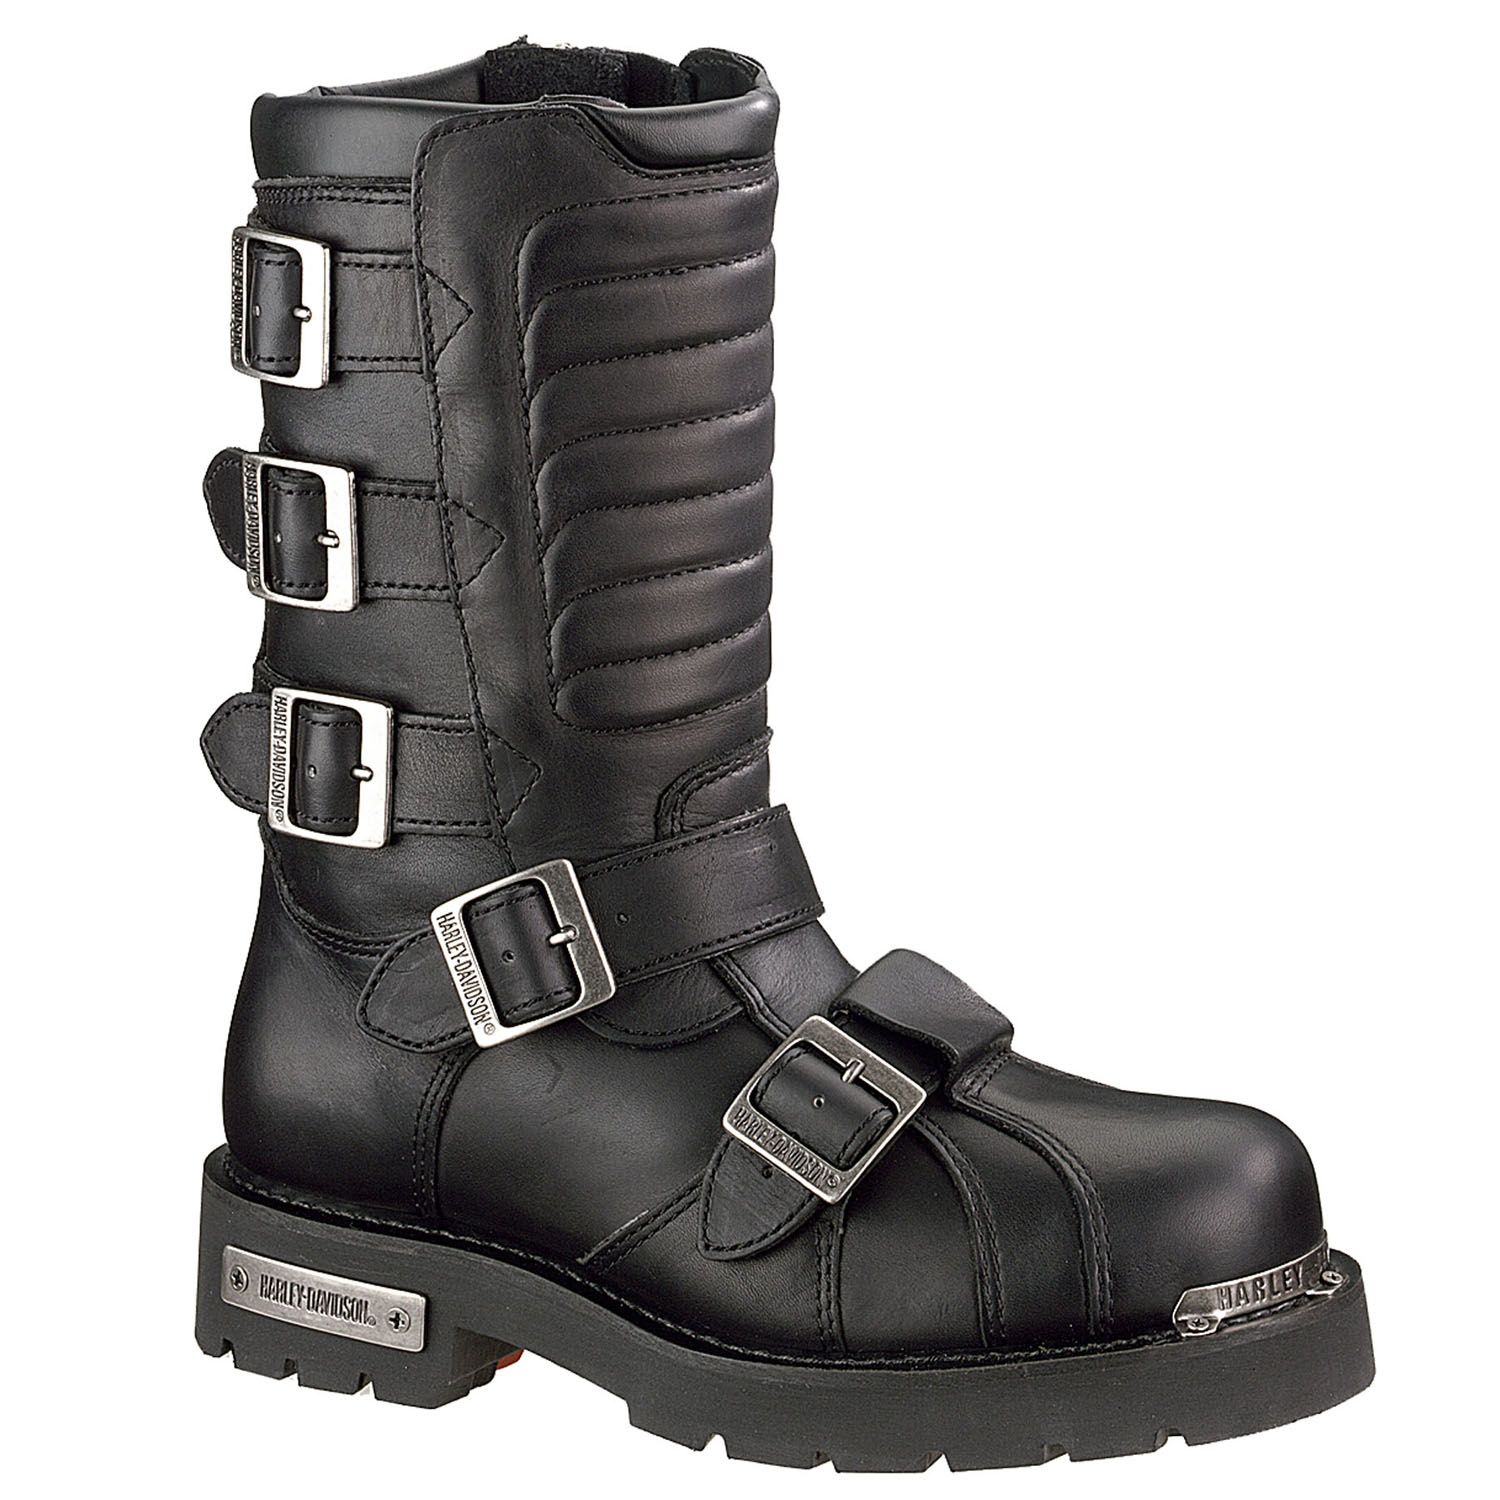 Harley-Davidson Men's Boots Side Light Leather Biker Black D91687 